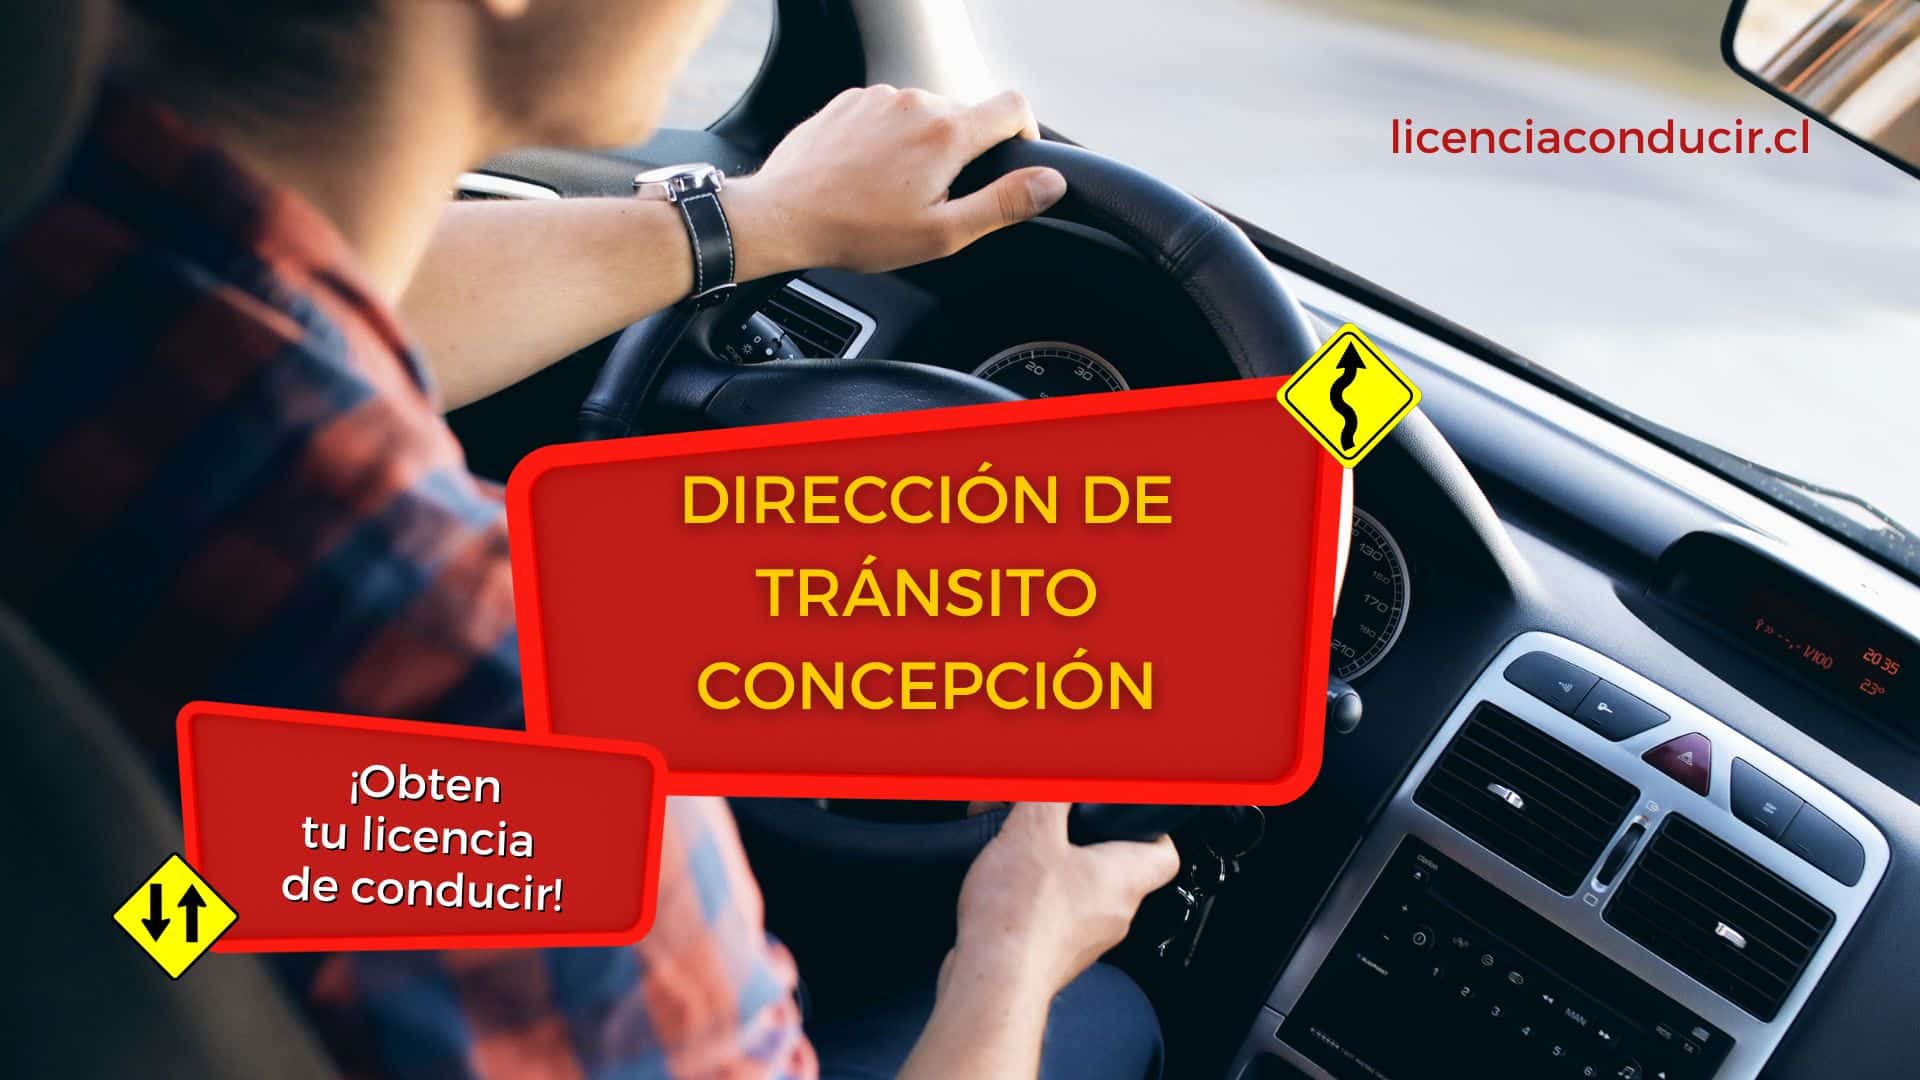 Renovar licencia conducir en concepción